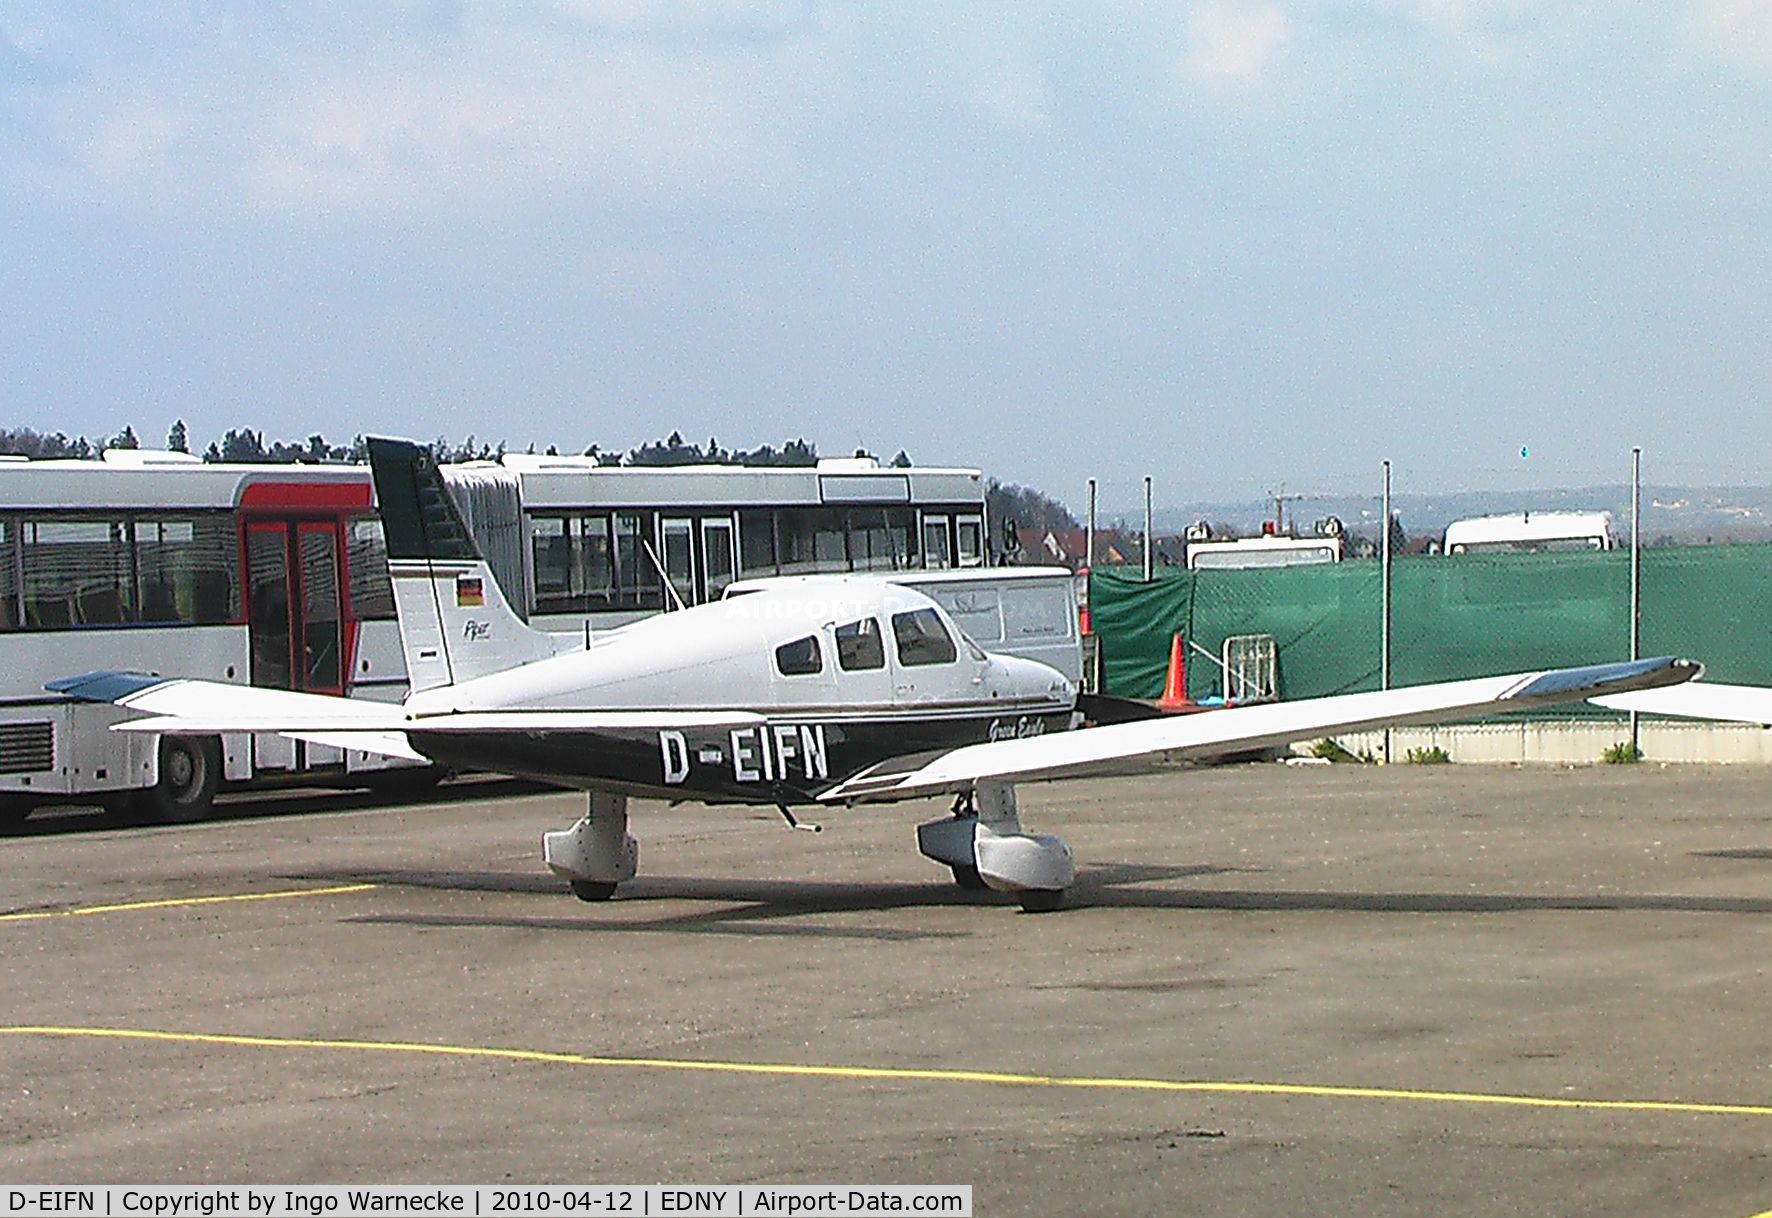 D-EIFN, 1995 Piper PA-28-181 Archer II C/N 2890229, Piper PA-28-181 Archer II at Friedrichshafen airport